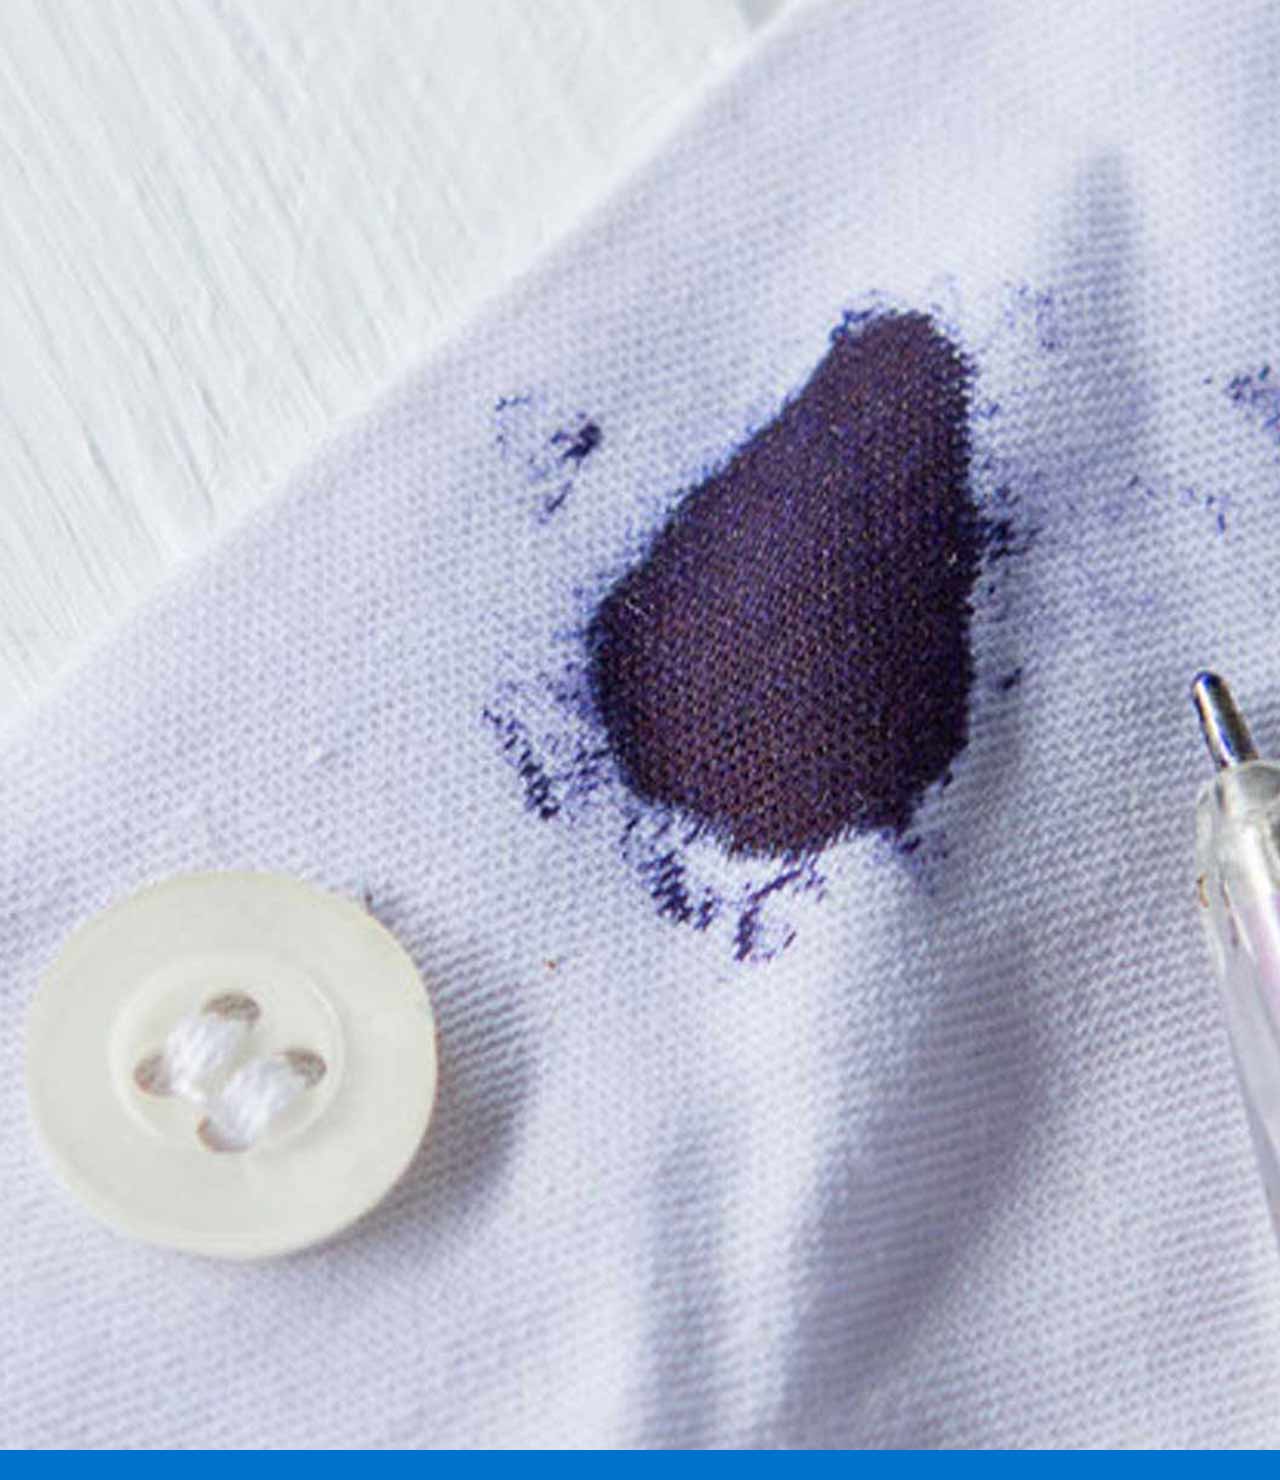 dolor de muelas matar Fielmente 5 formas de quitar manchas de tinta en la ropa | Homecenter